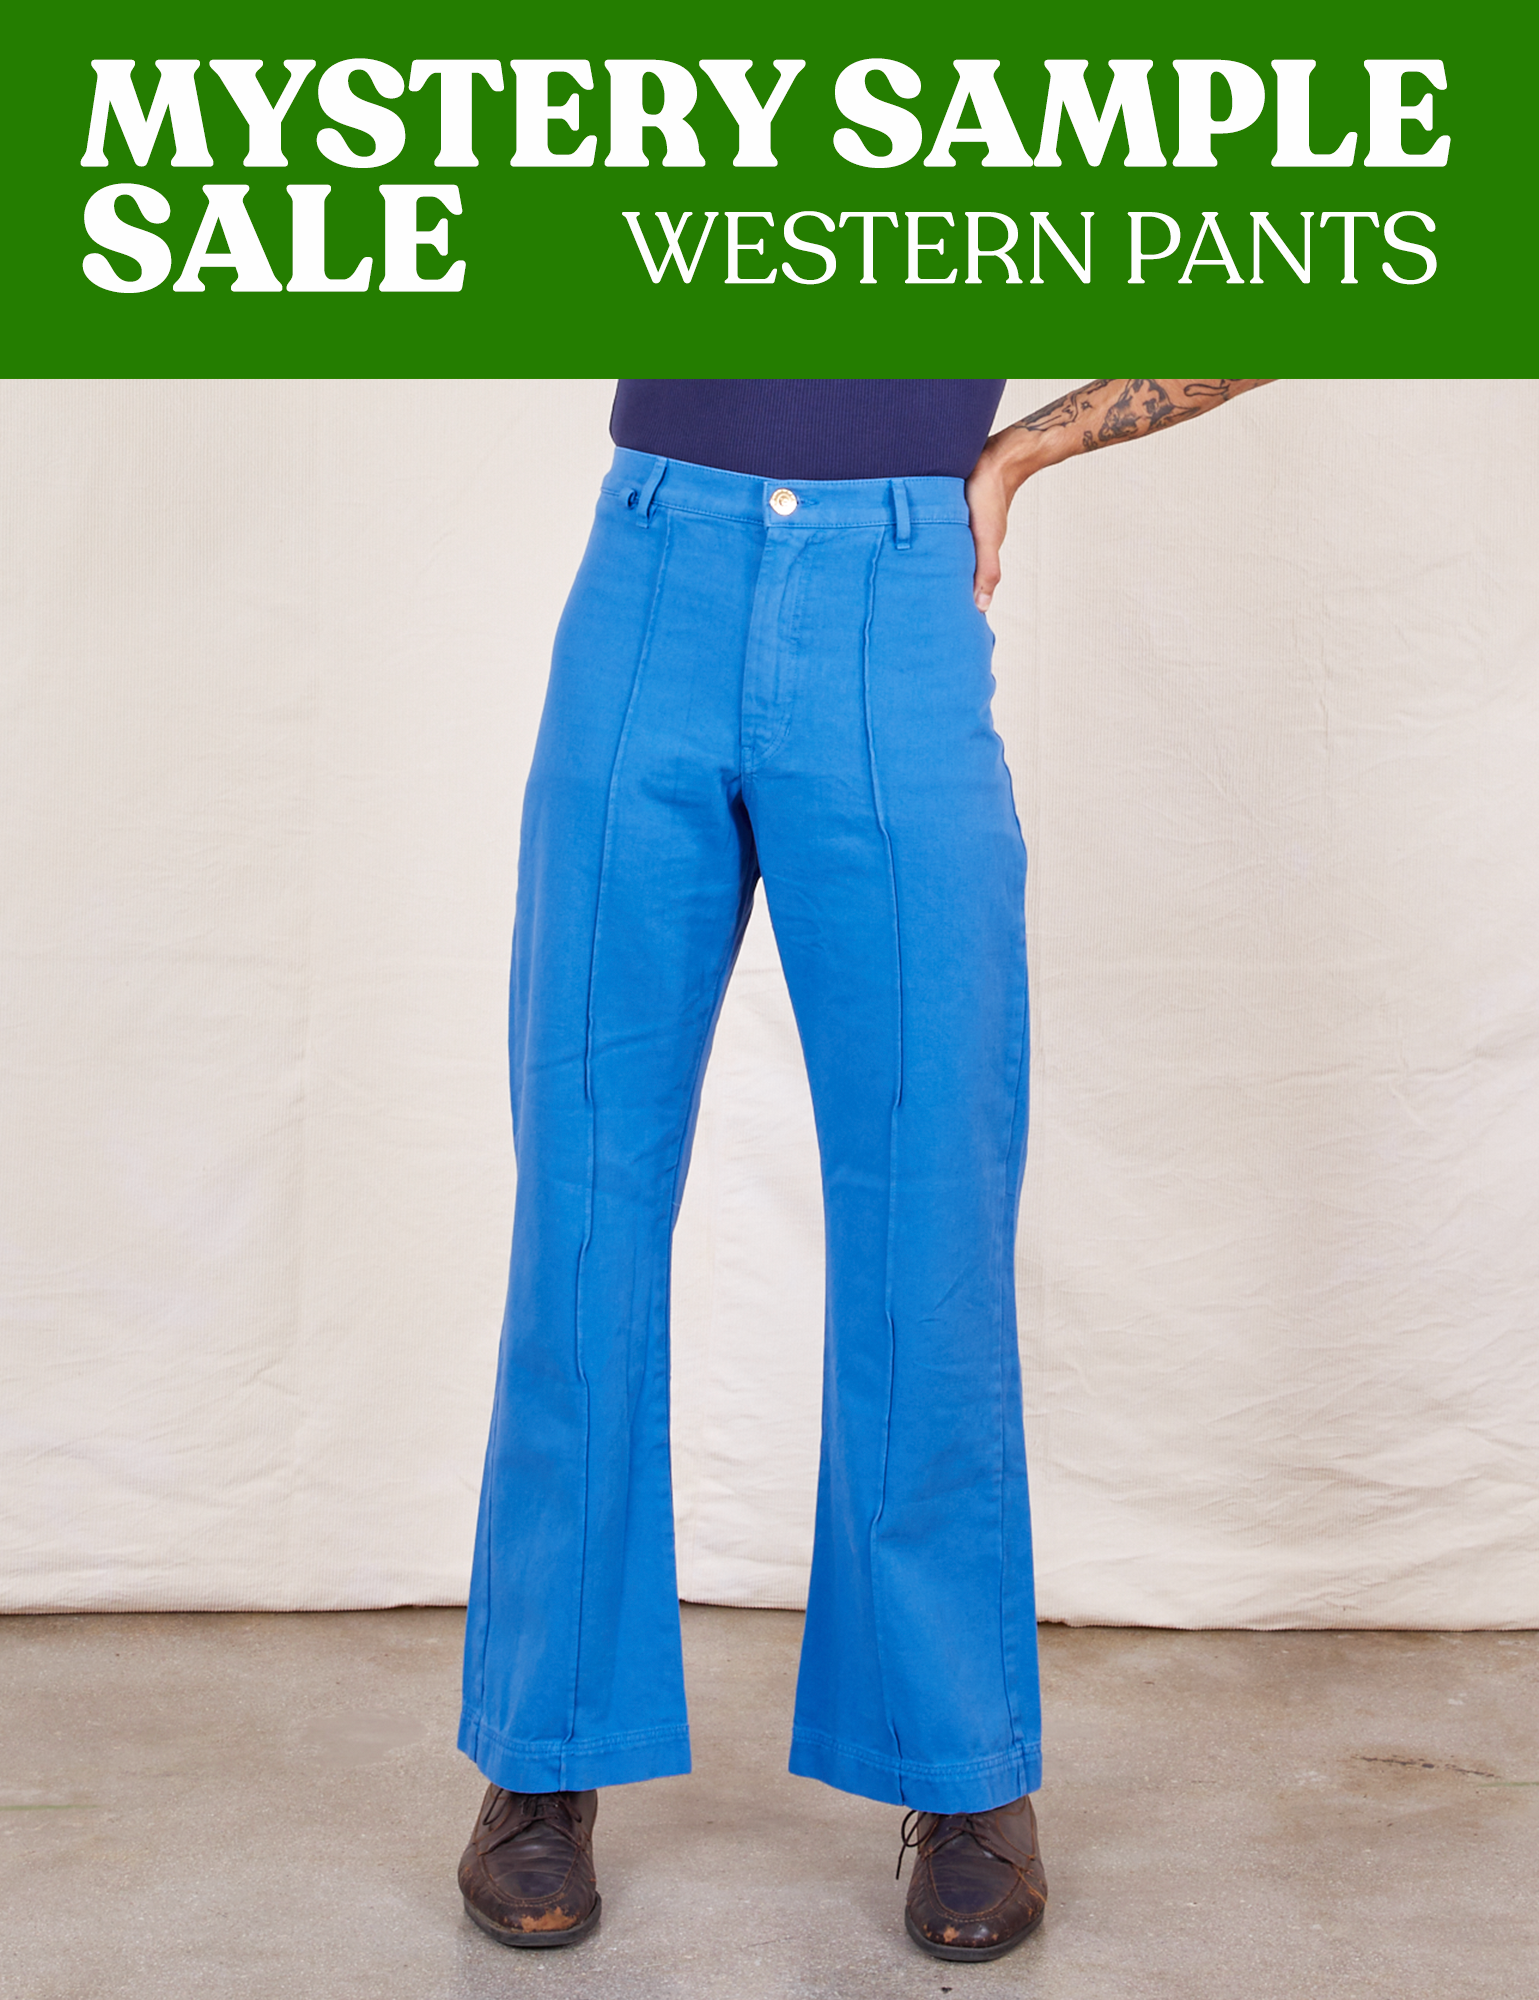 1970s bell bottom jeans